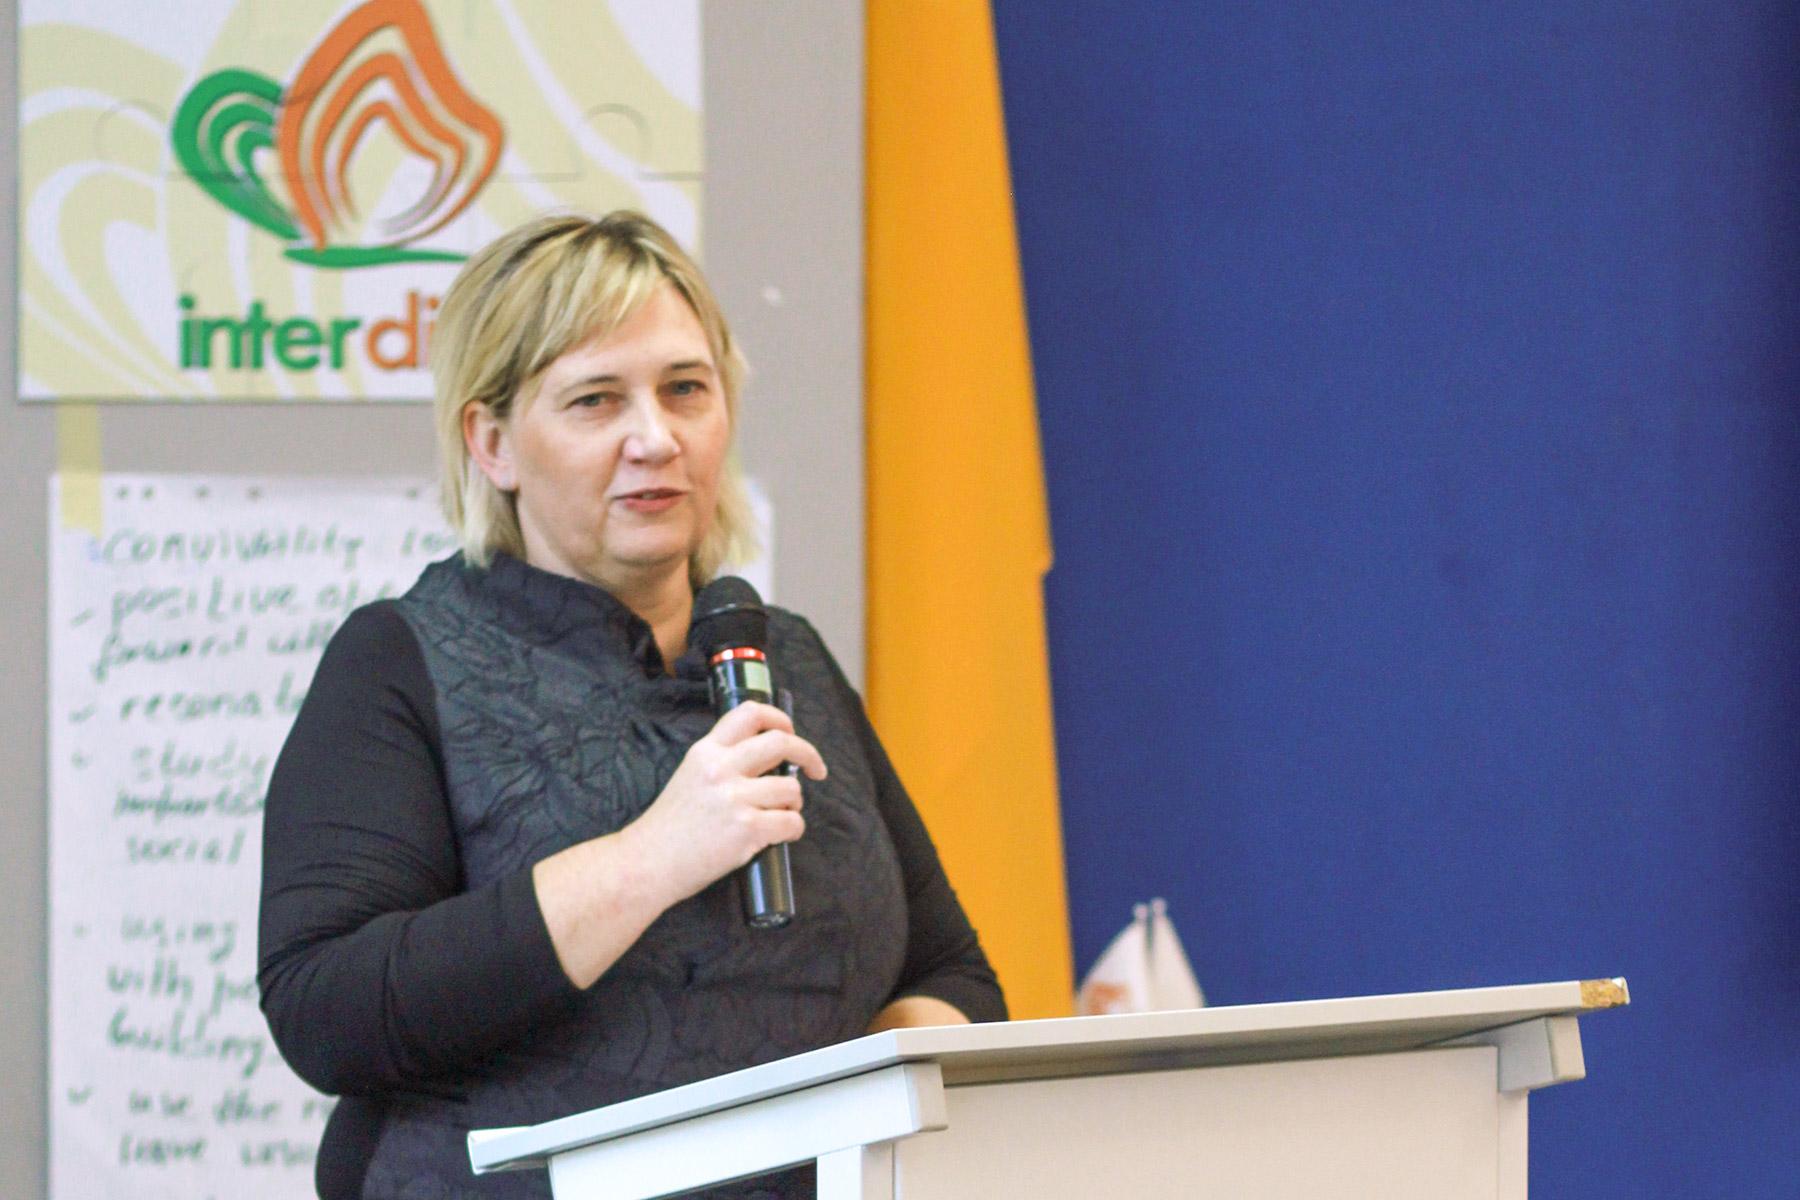 Janka Adameová ist Leiterin und Mitbegründerin der Internationalen Akademie für Diakonie und soziales Handeln, Mittel- und Osteuropa (interdiac). Foto: LWB